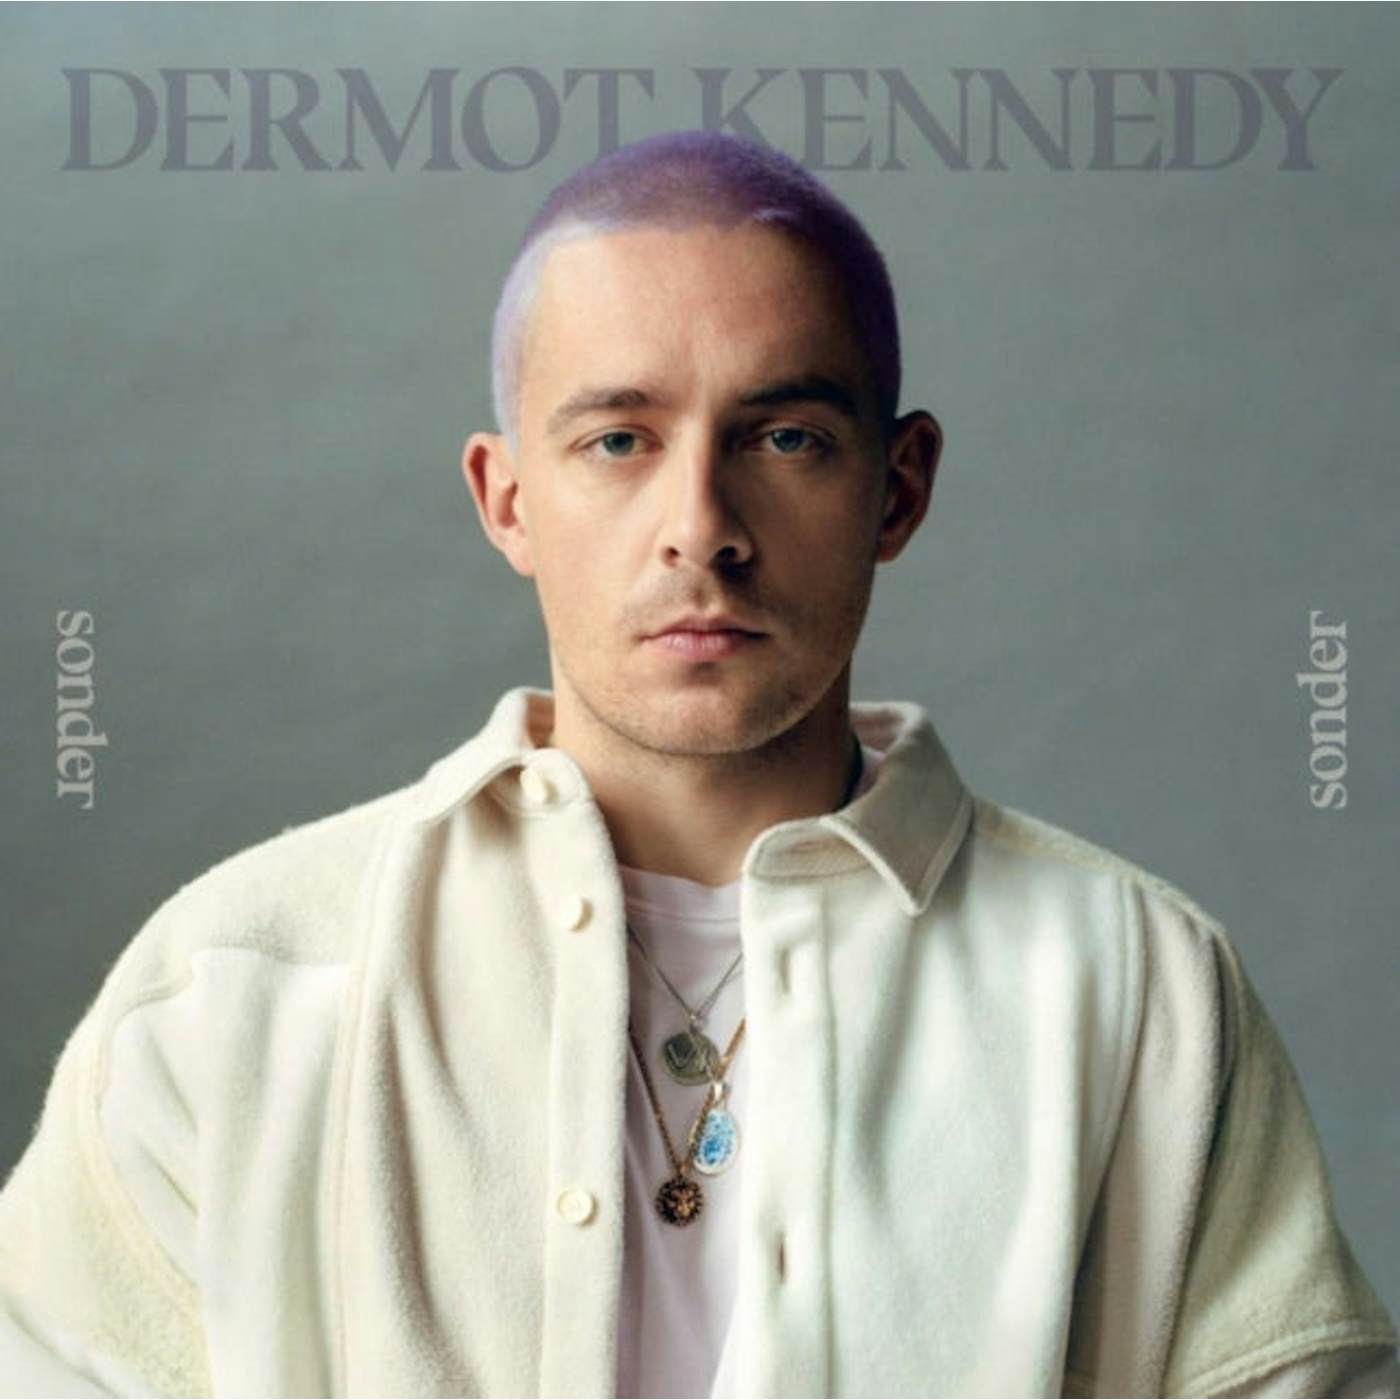 Dermot Kennedy LP - Sonder (White Vinyl)